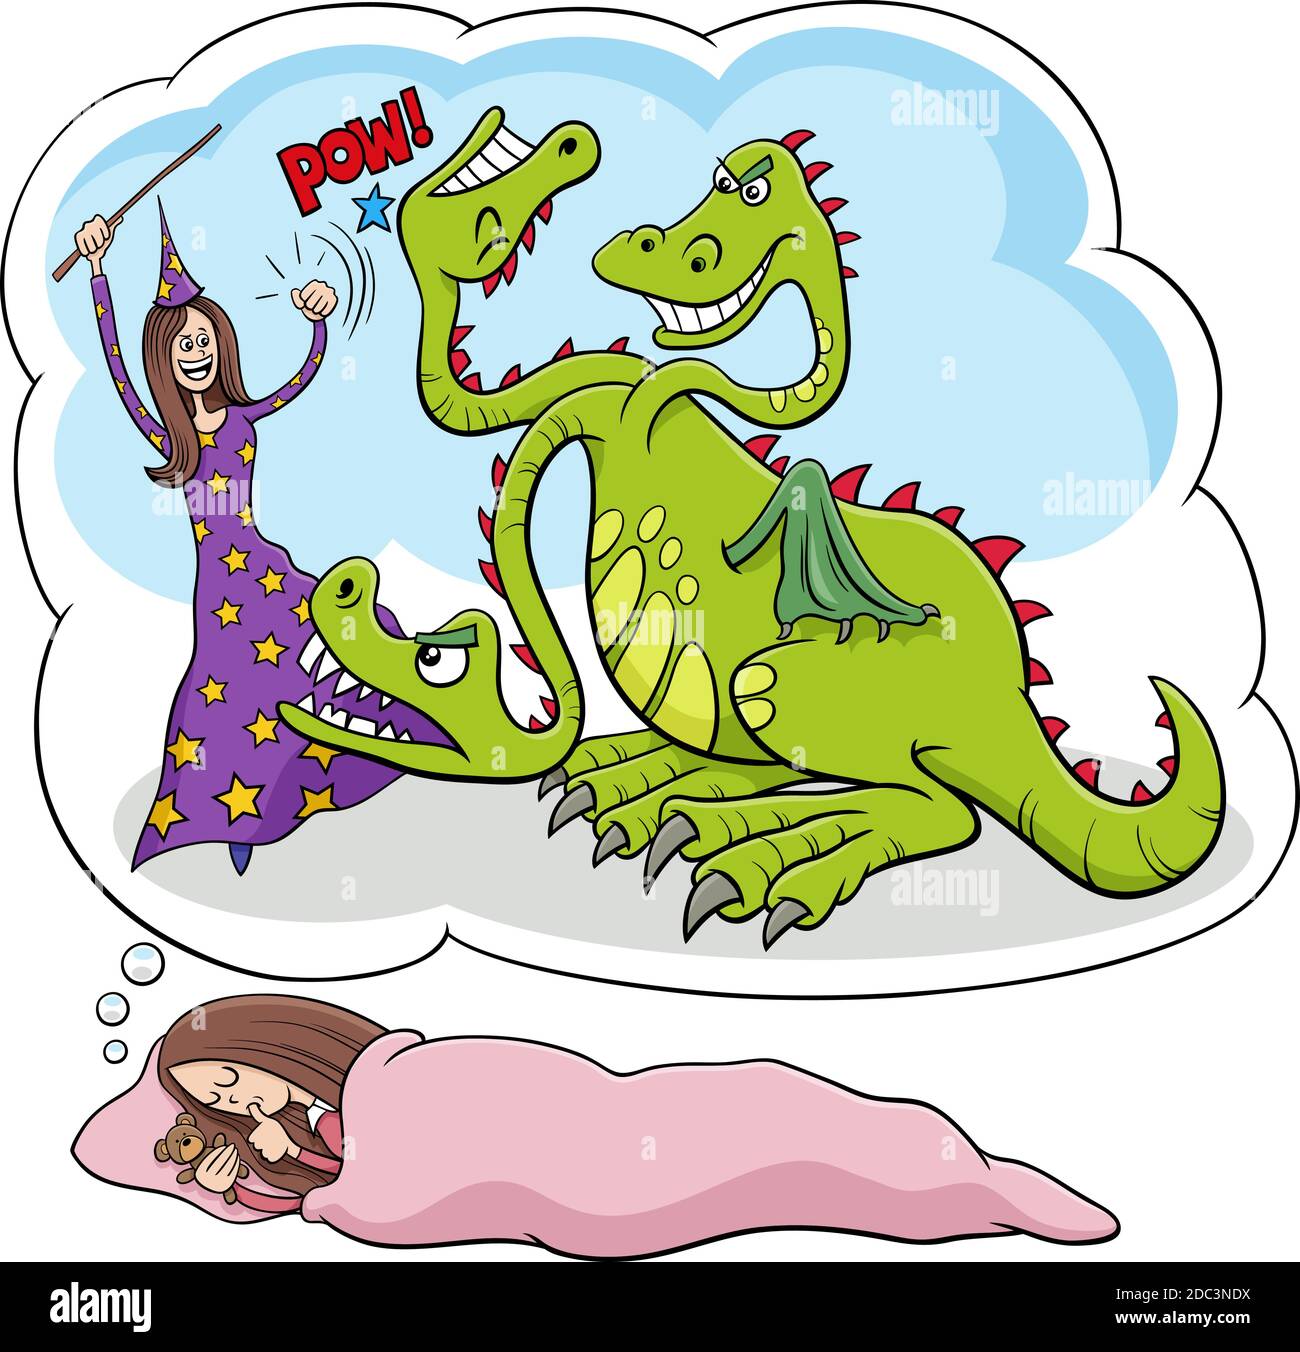 Ilustración de dibujos animados de una joven durmiente soñando con derrotar a la dragón Ilustración del Vector